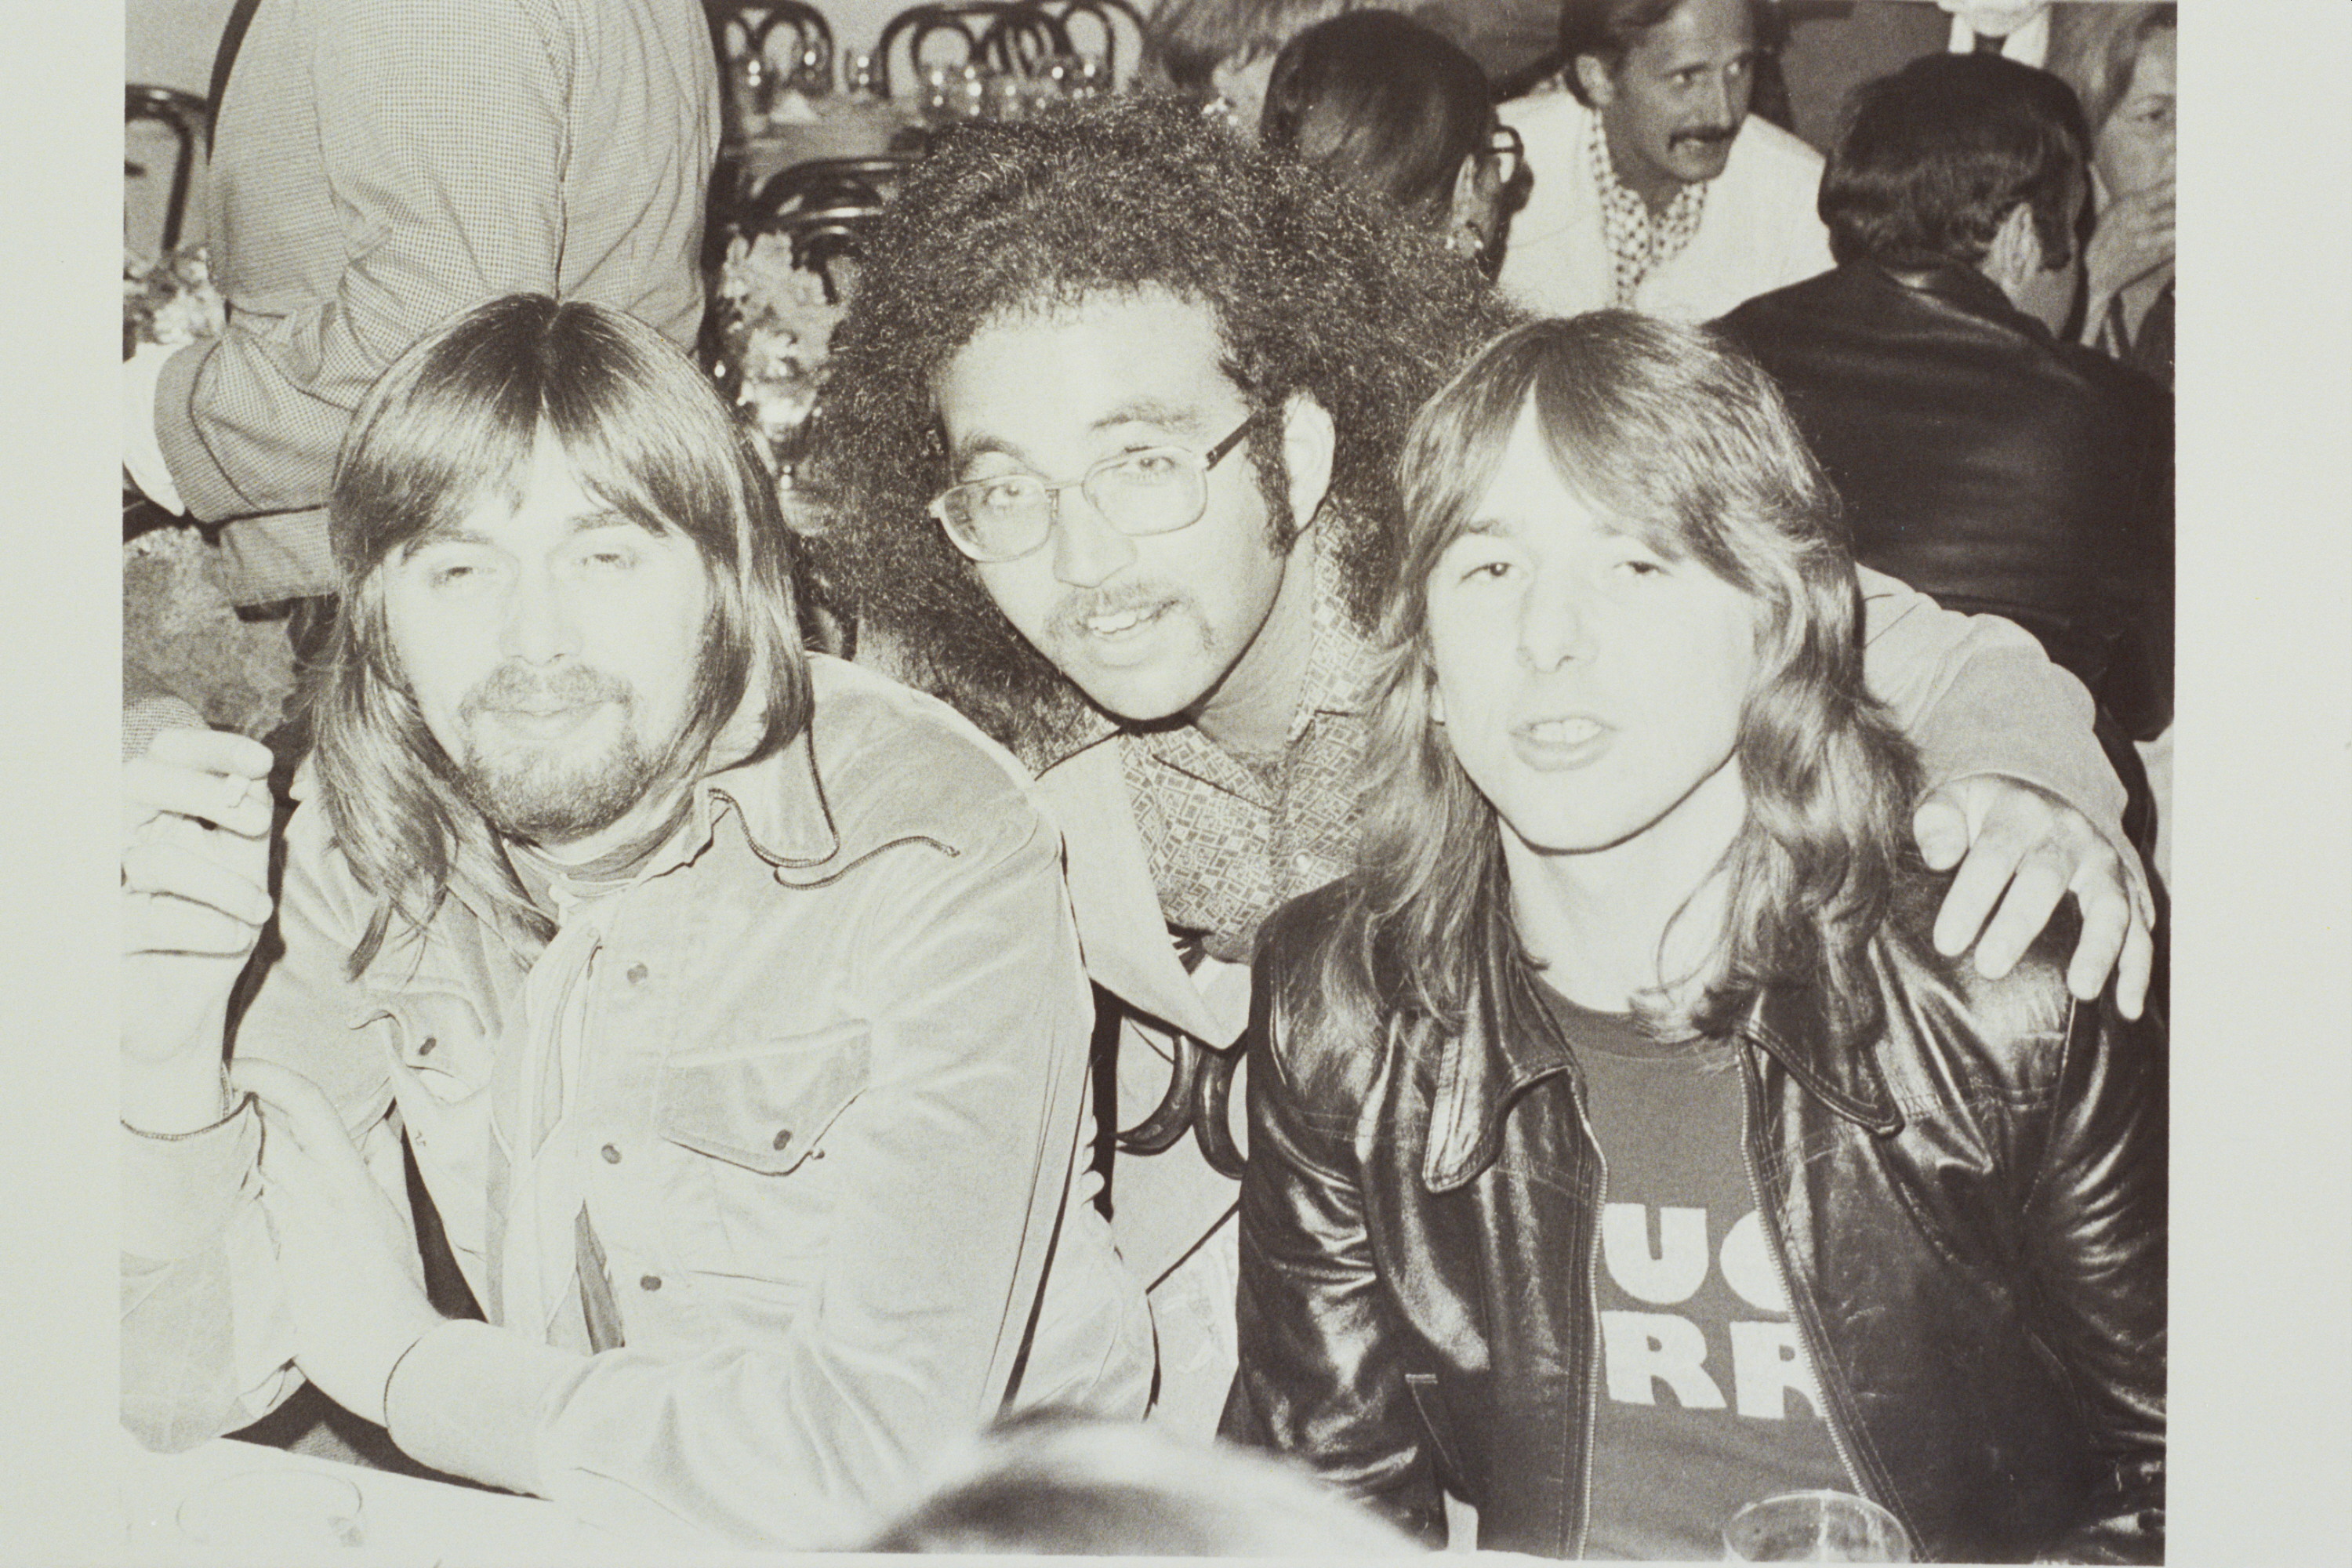 (Left to Right) Boz Burrell, Steven Rosen and Mick Ralphs.